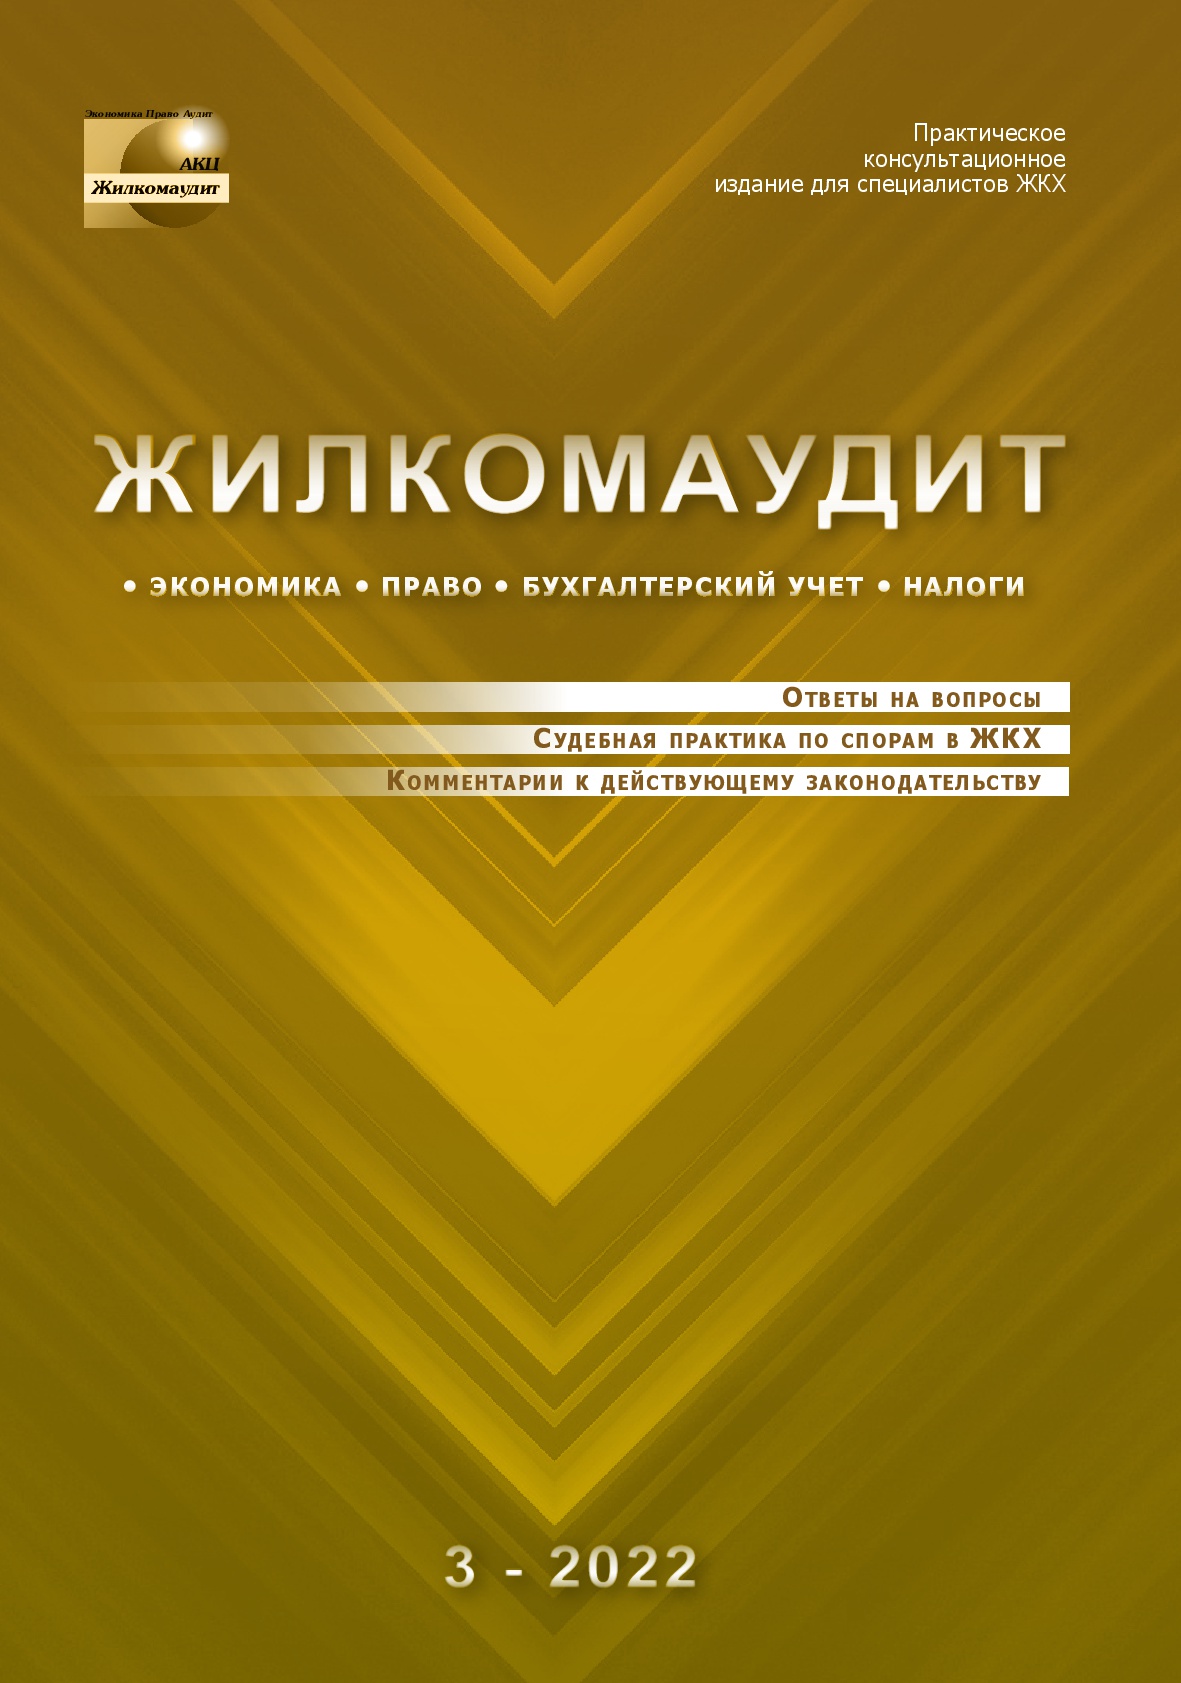 Журнал "Жилкомаудит"№3-2022